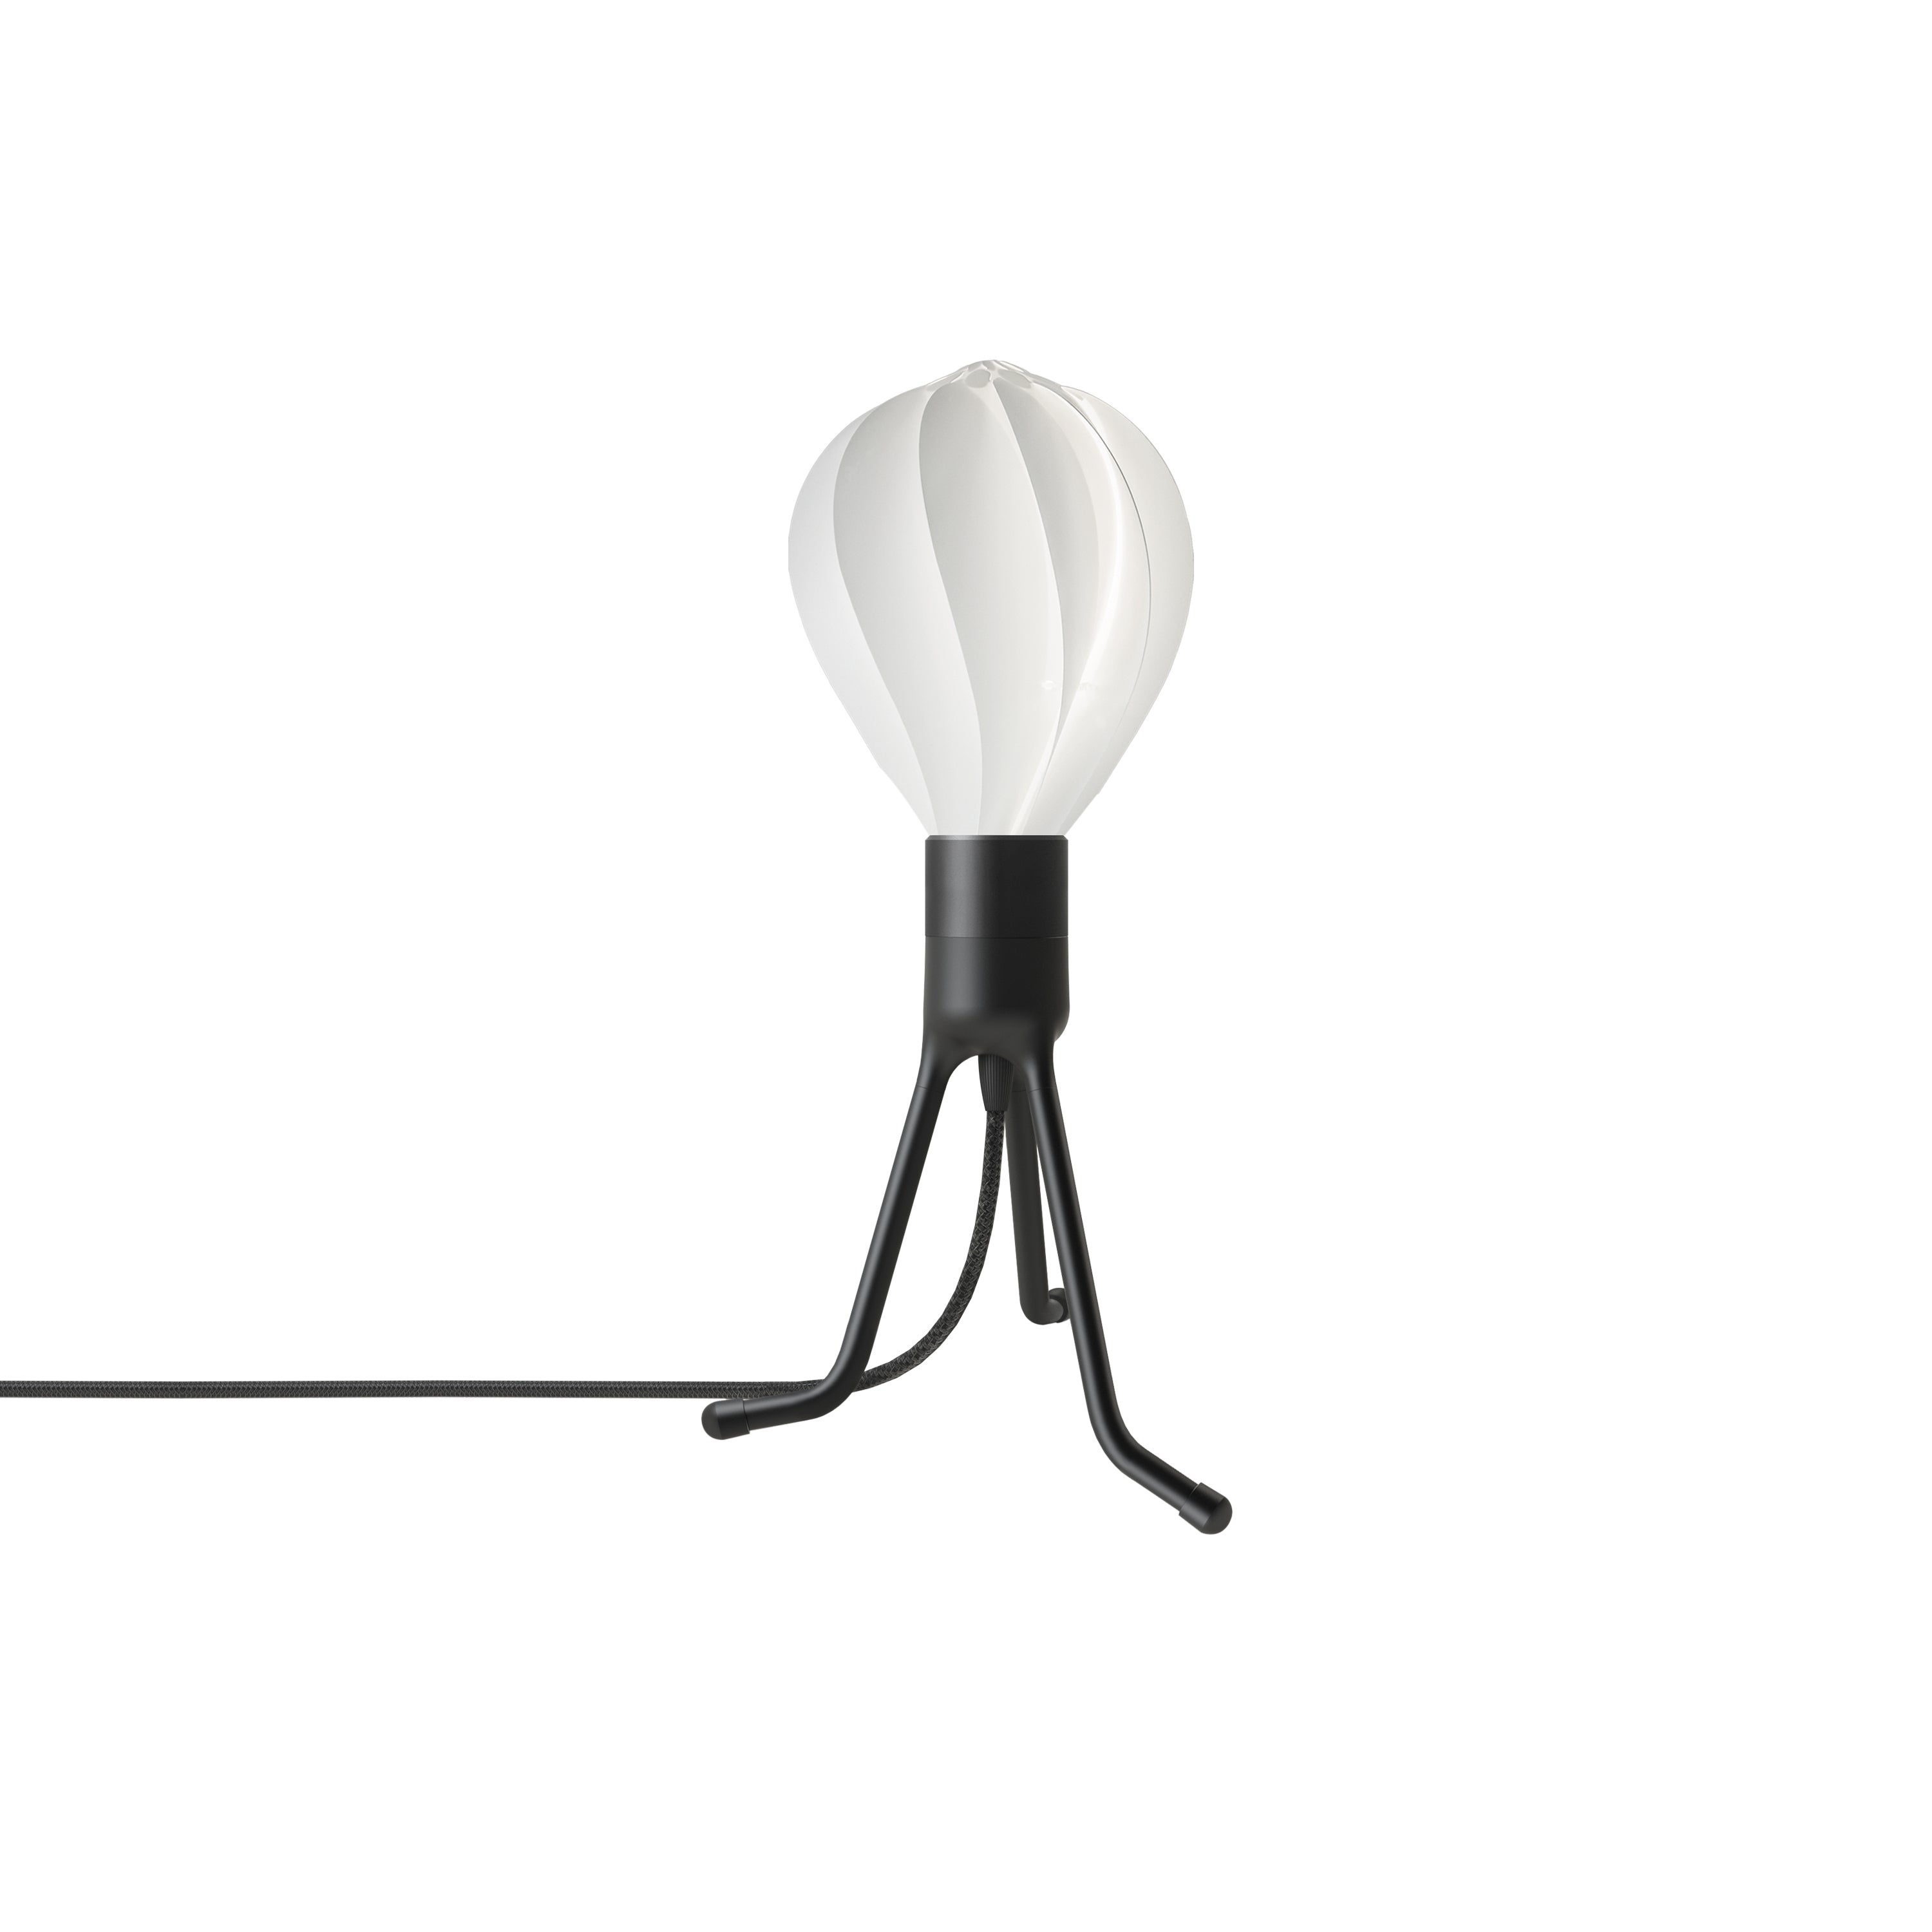 Alva Adjustable Tripod Table Lamp: Medium - 9.6